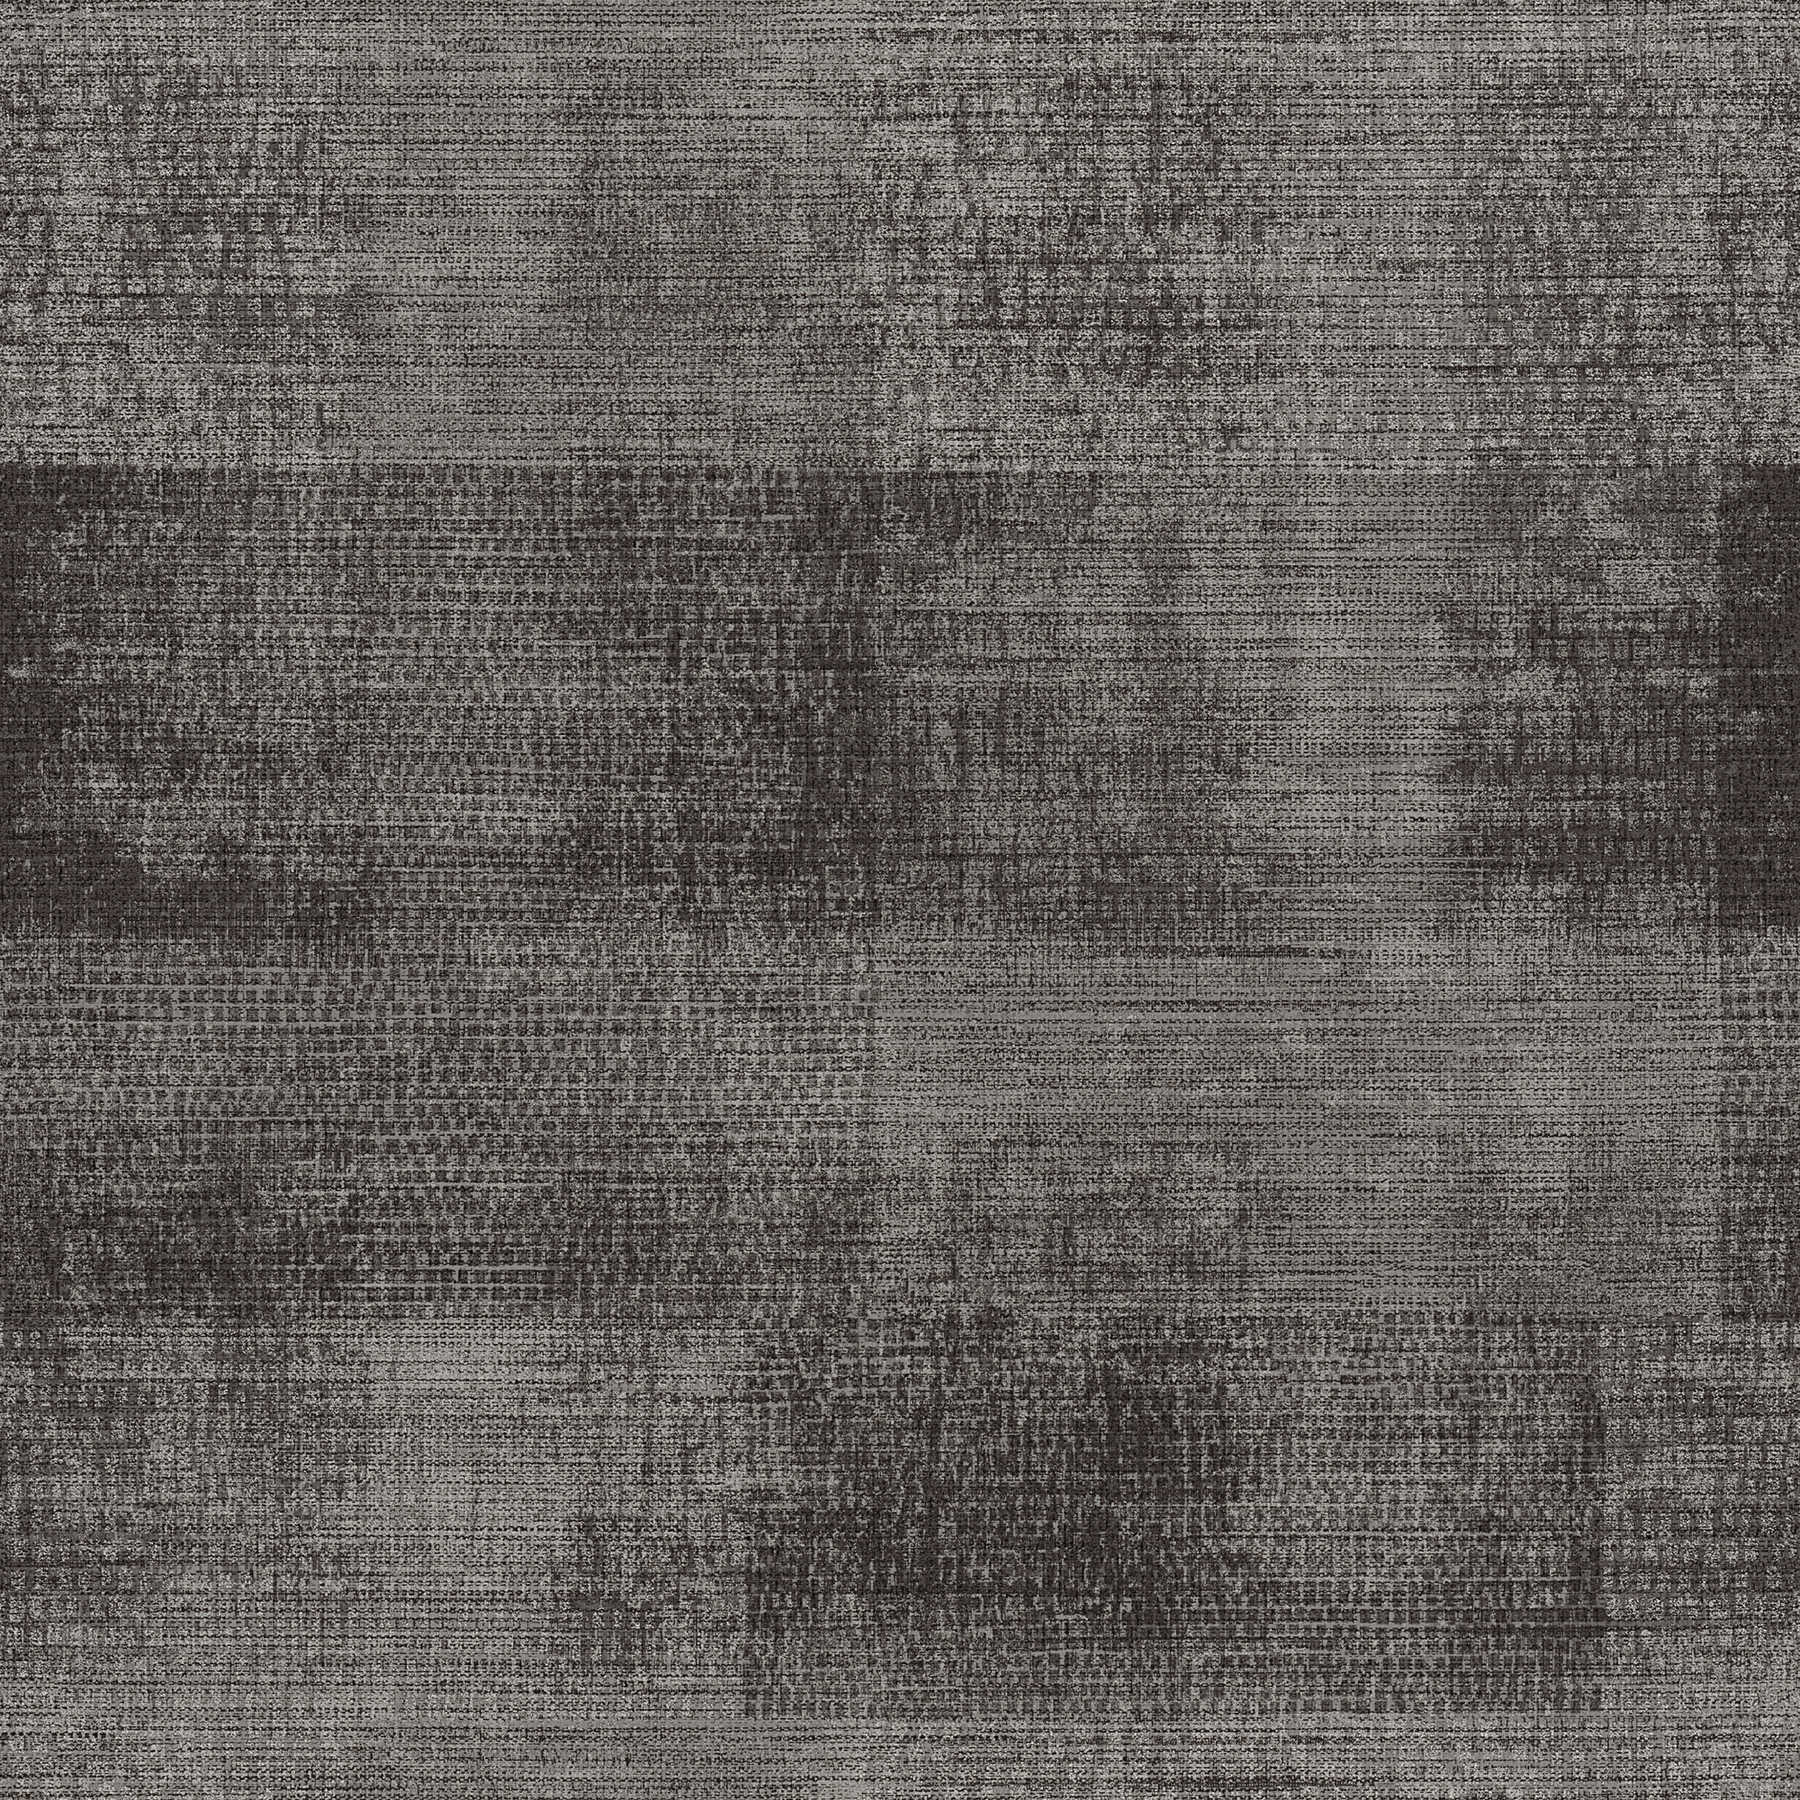         Textuurpatroon van vliesbehang in etnostijl - grijs, zwart
    